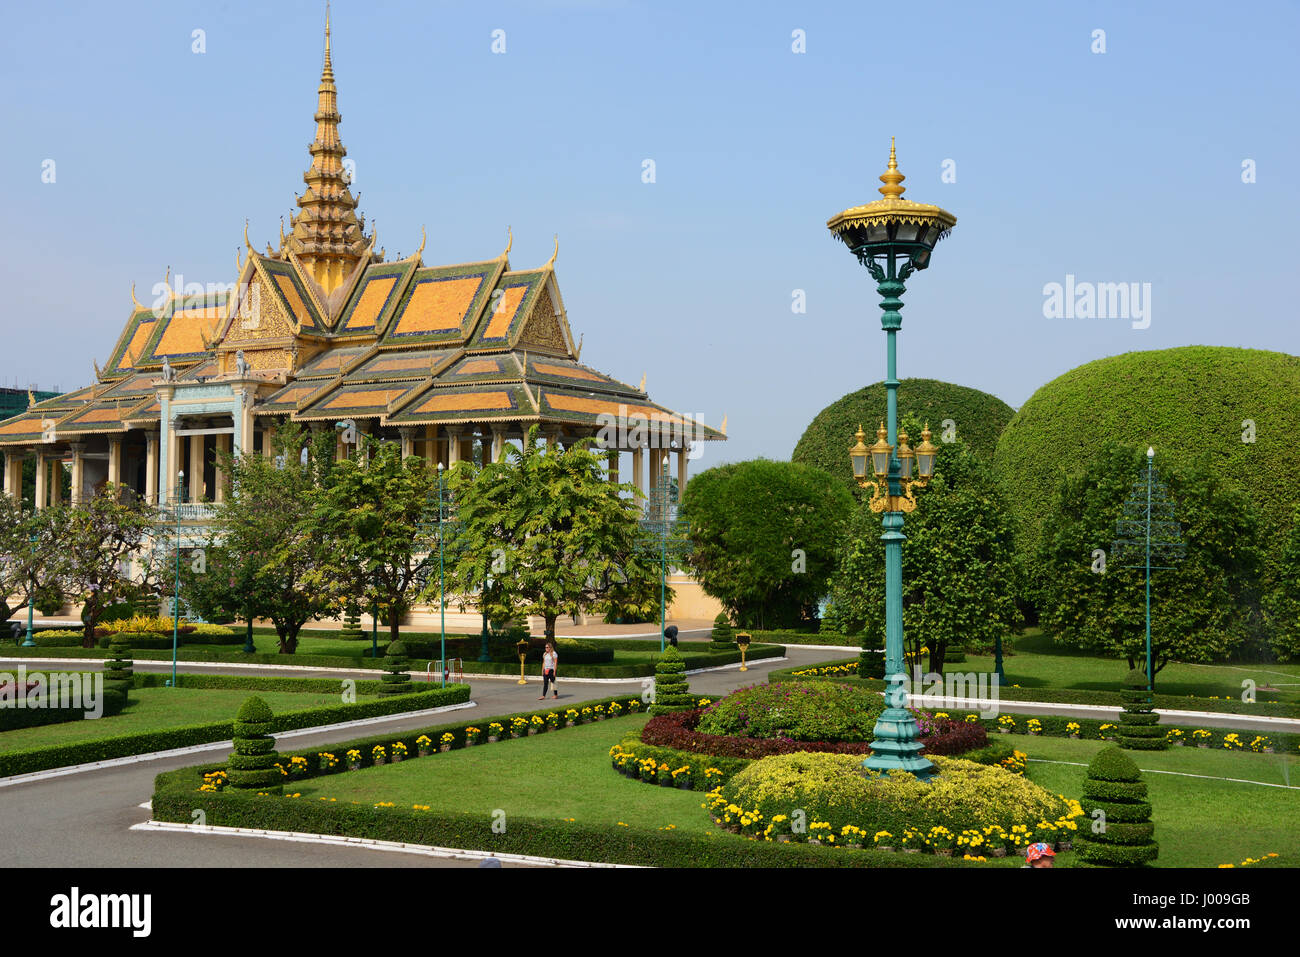 Royal Palace of Cambodia, Phnom Penh Stock Photo